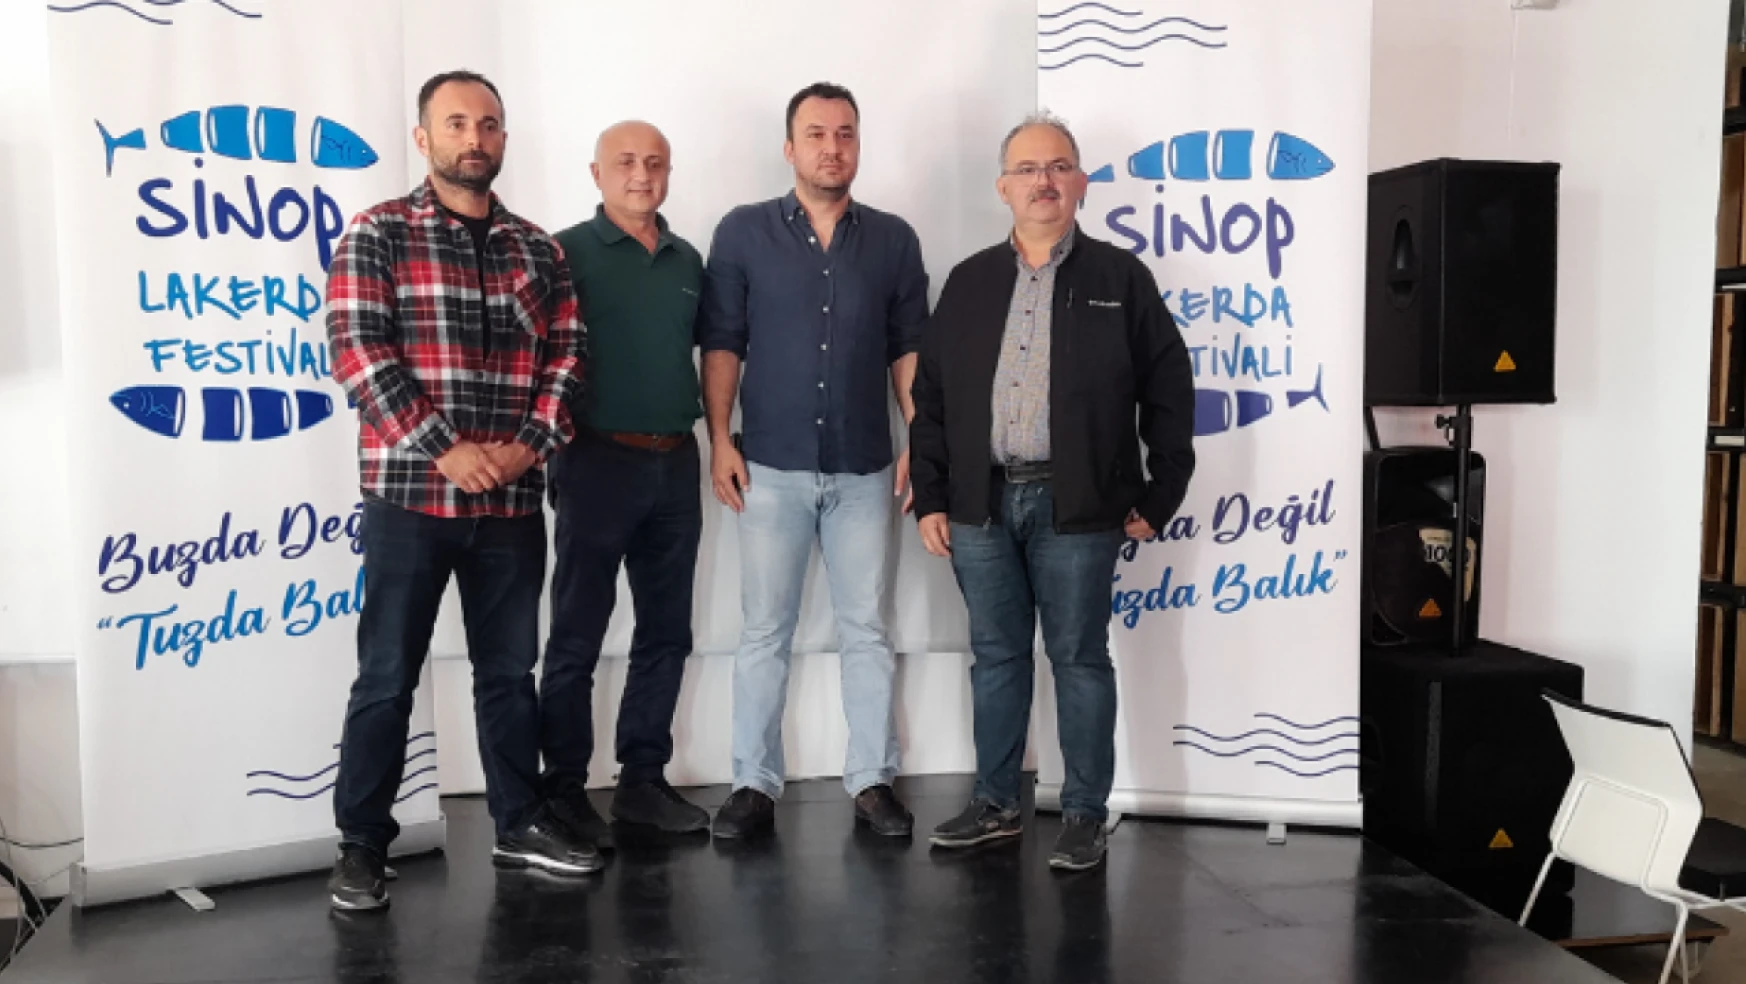 Sinop'ta 'Lakerda Festivali'nin 4'üncüsü Yapılacak